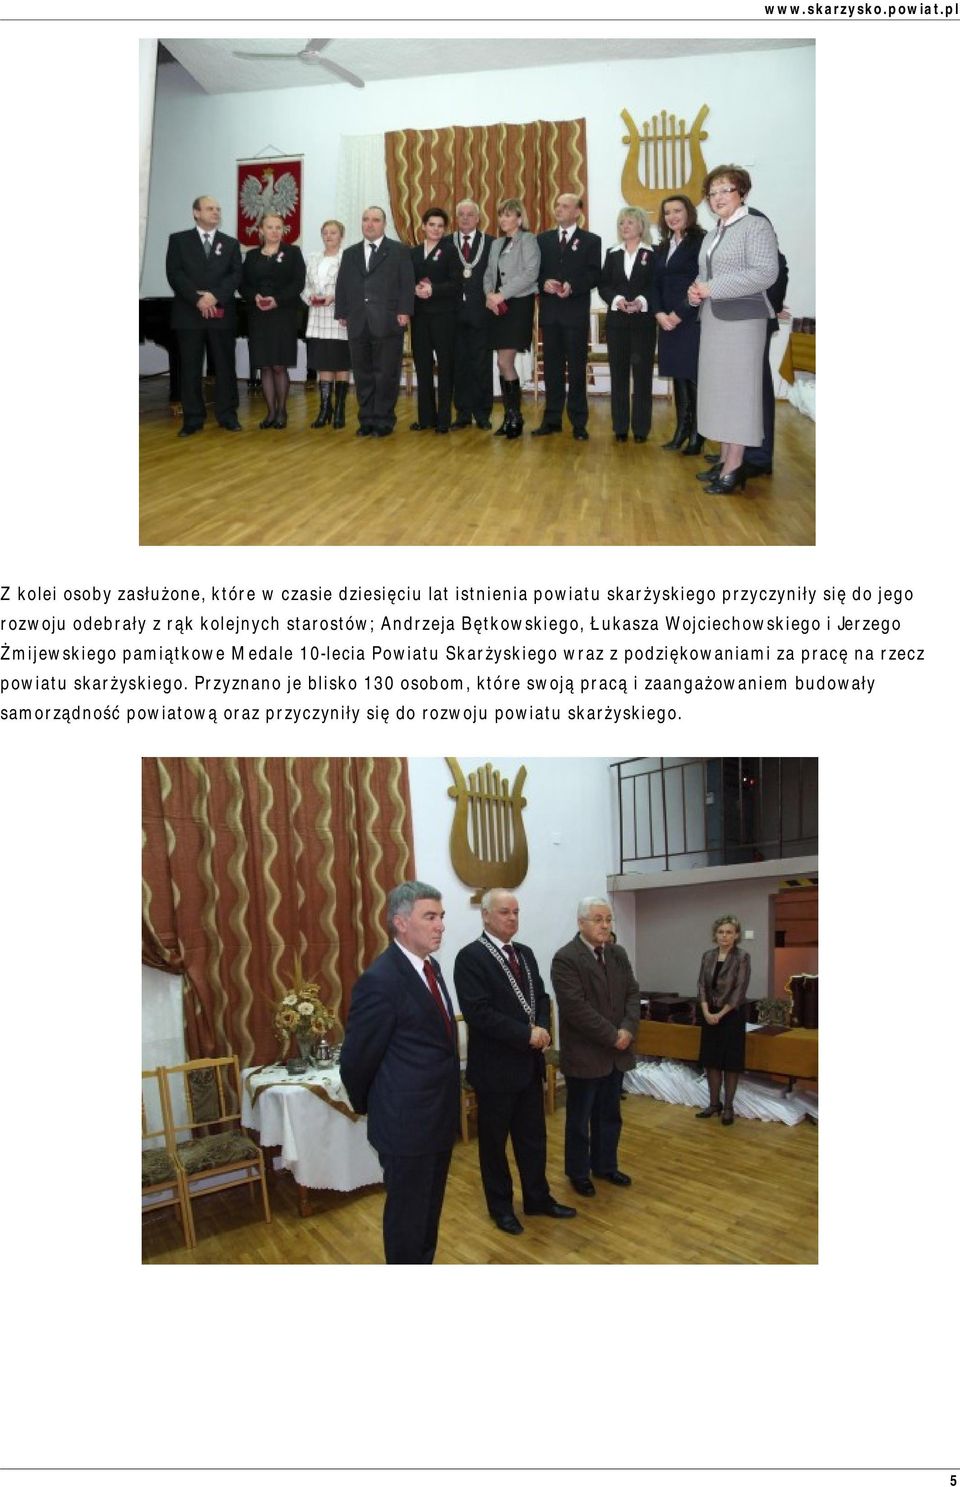 Medale 10-lecia Powiatu Skarżyskiego wraz z podziękowaniami za pracę na rzecz powiatu skarżyskiego.